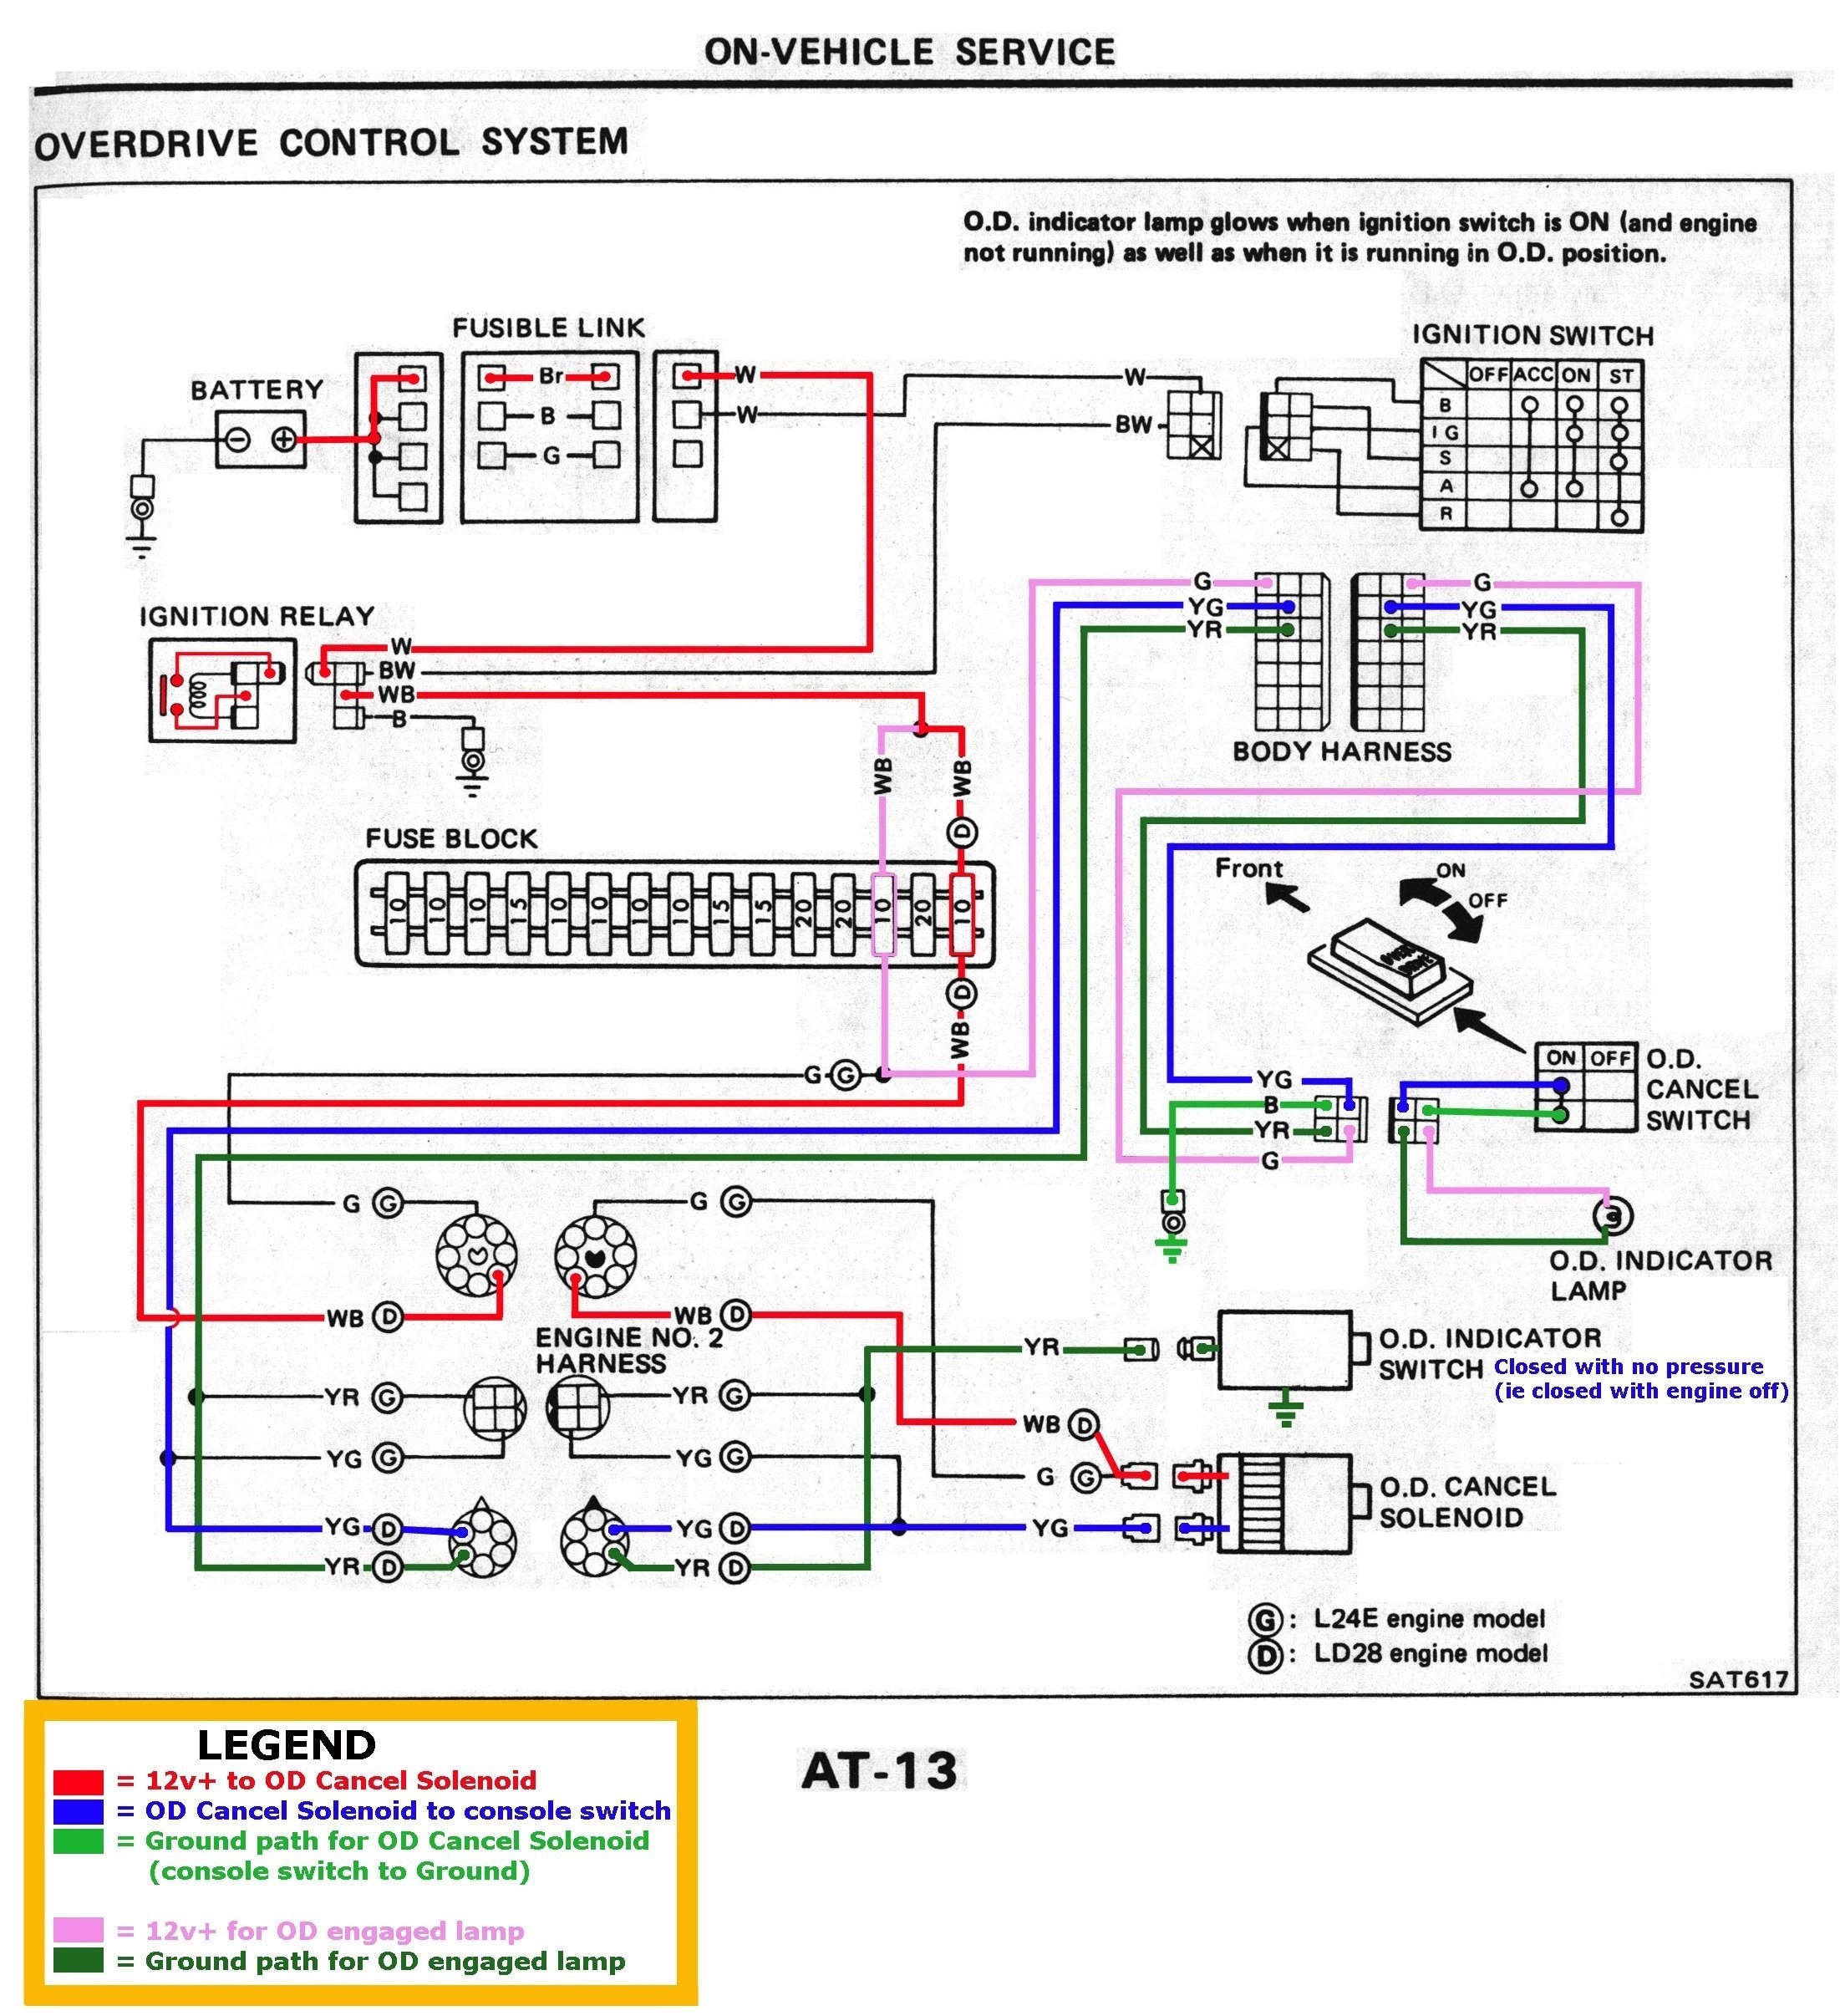 Basic Motorcycle Engine Diagram Headlight Alarm Wiring Diagram Wiring Diagrams • Of Basic Motorcycle Engine Diagram